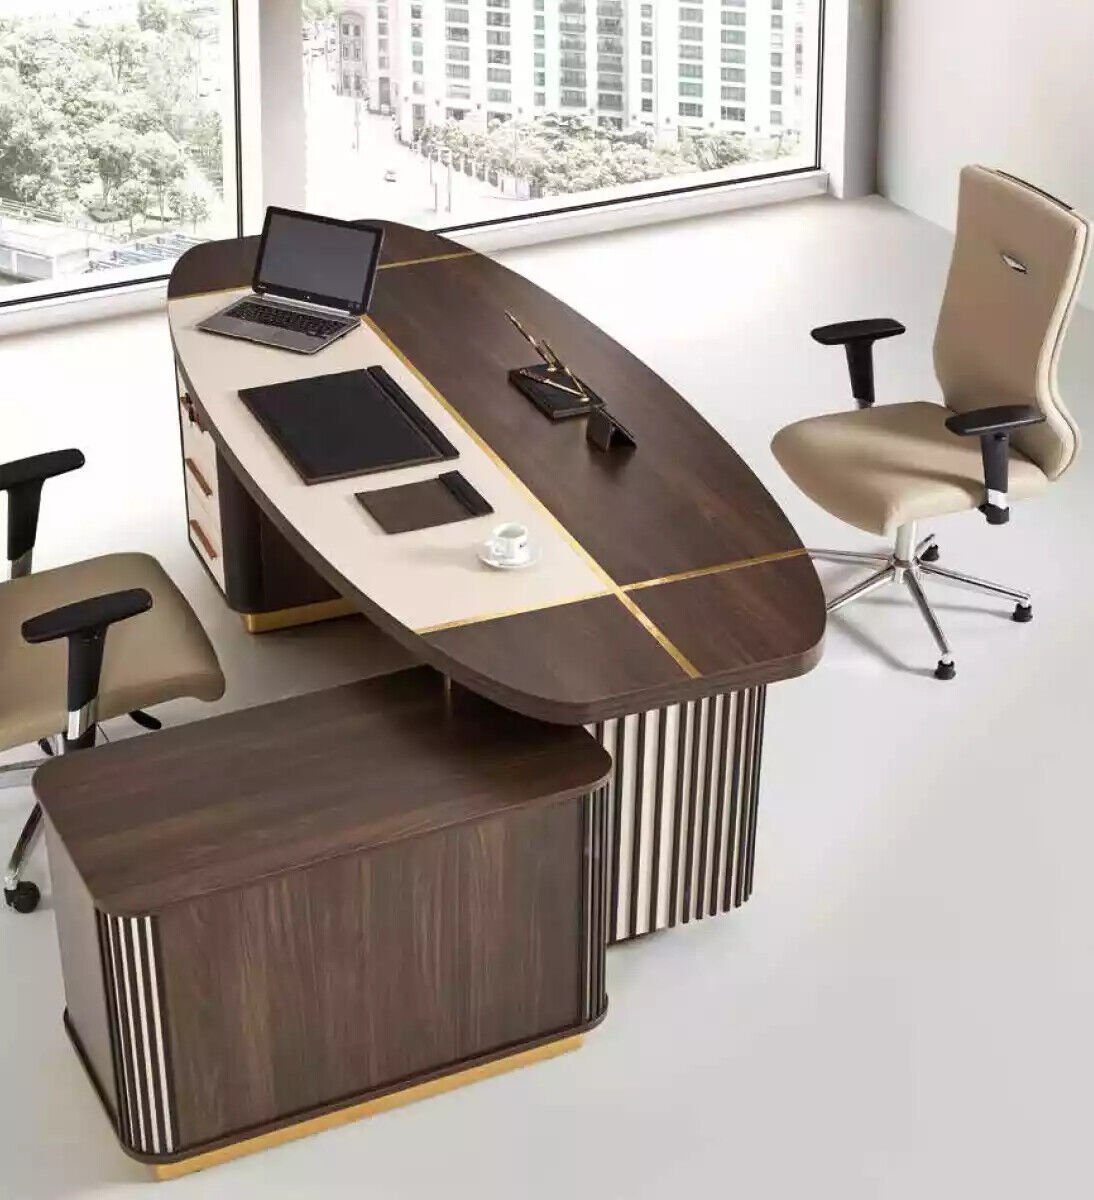 In Luxus Schreibtisch Tische 250x165 Made Ovaler Tisch Eckschreibtisch Eckschreibtische, JVmoebel Europe